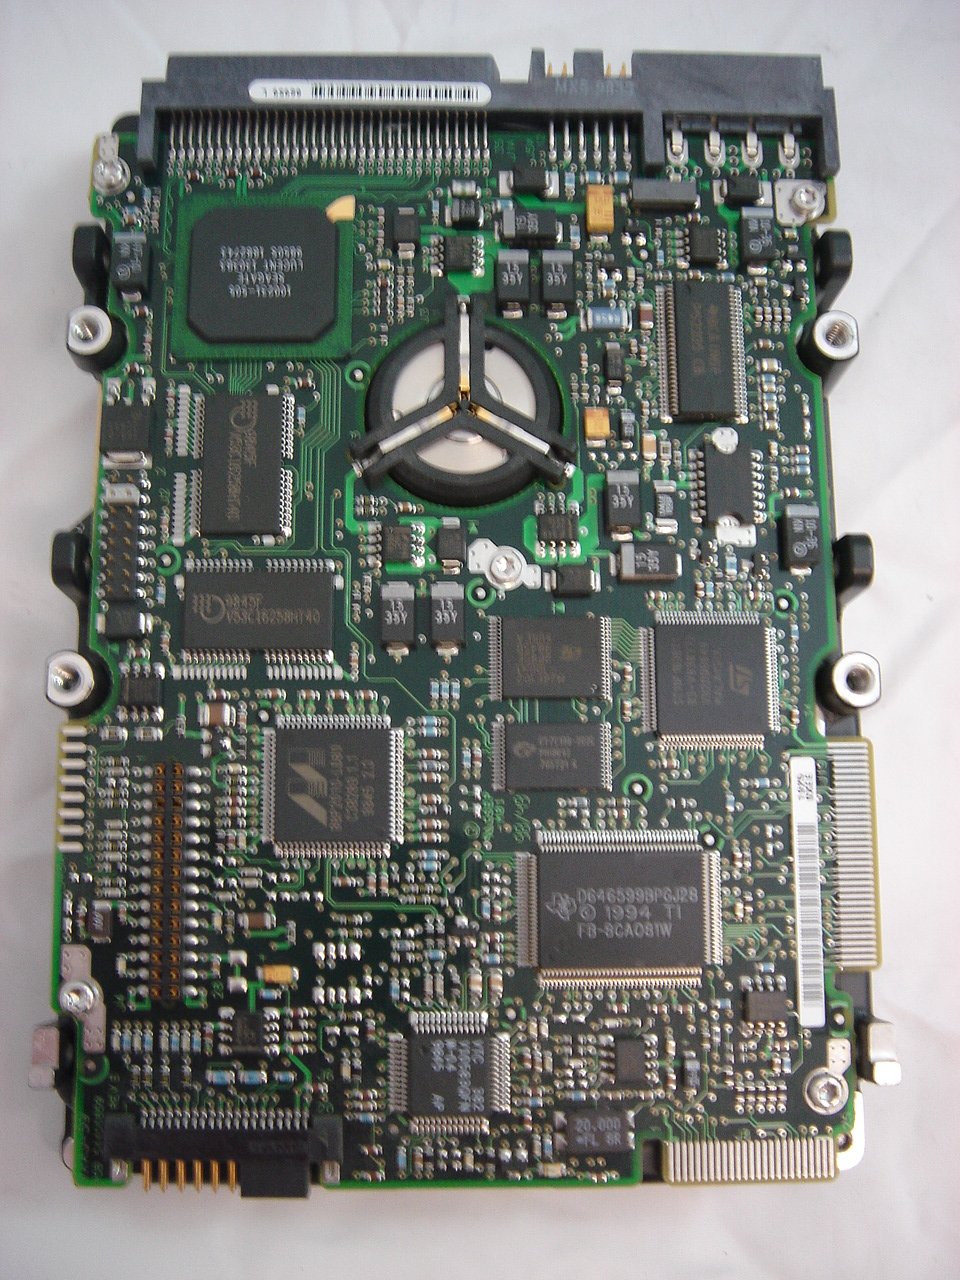 9K8005-001 - Seagate 4.5Gb SCSI 68 Pin 10Krpm 3.5in HDD - Refurbished